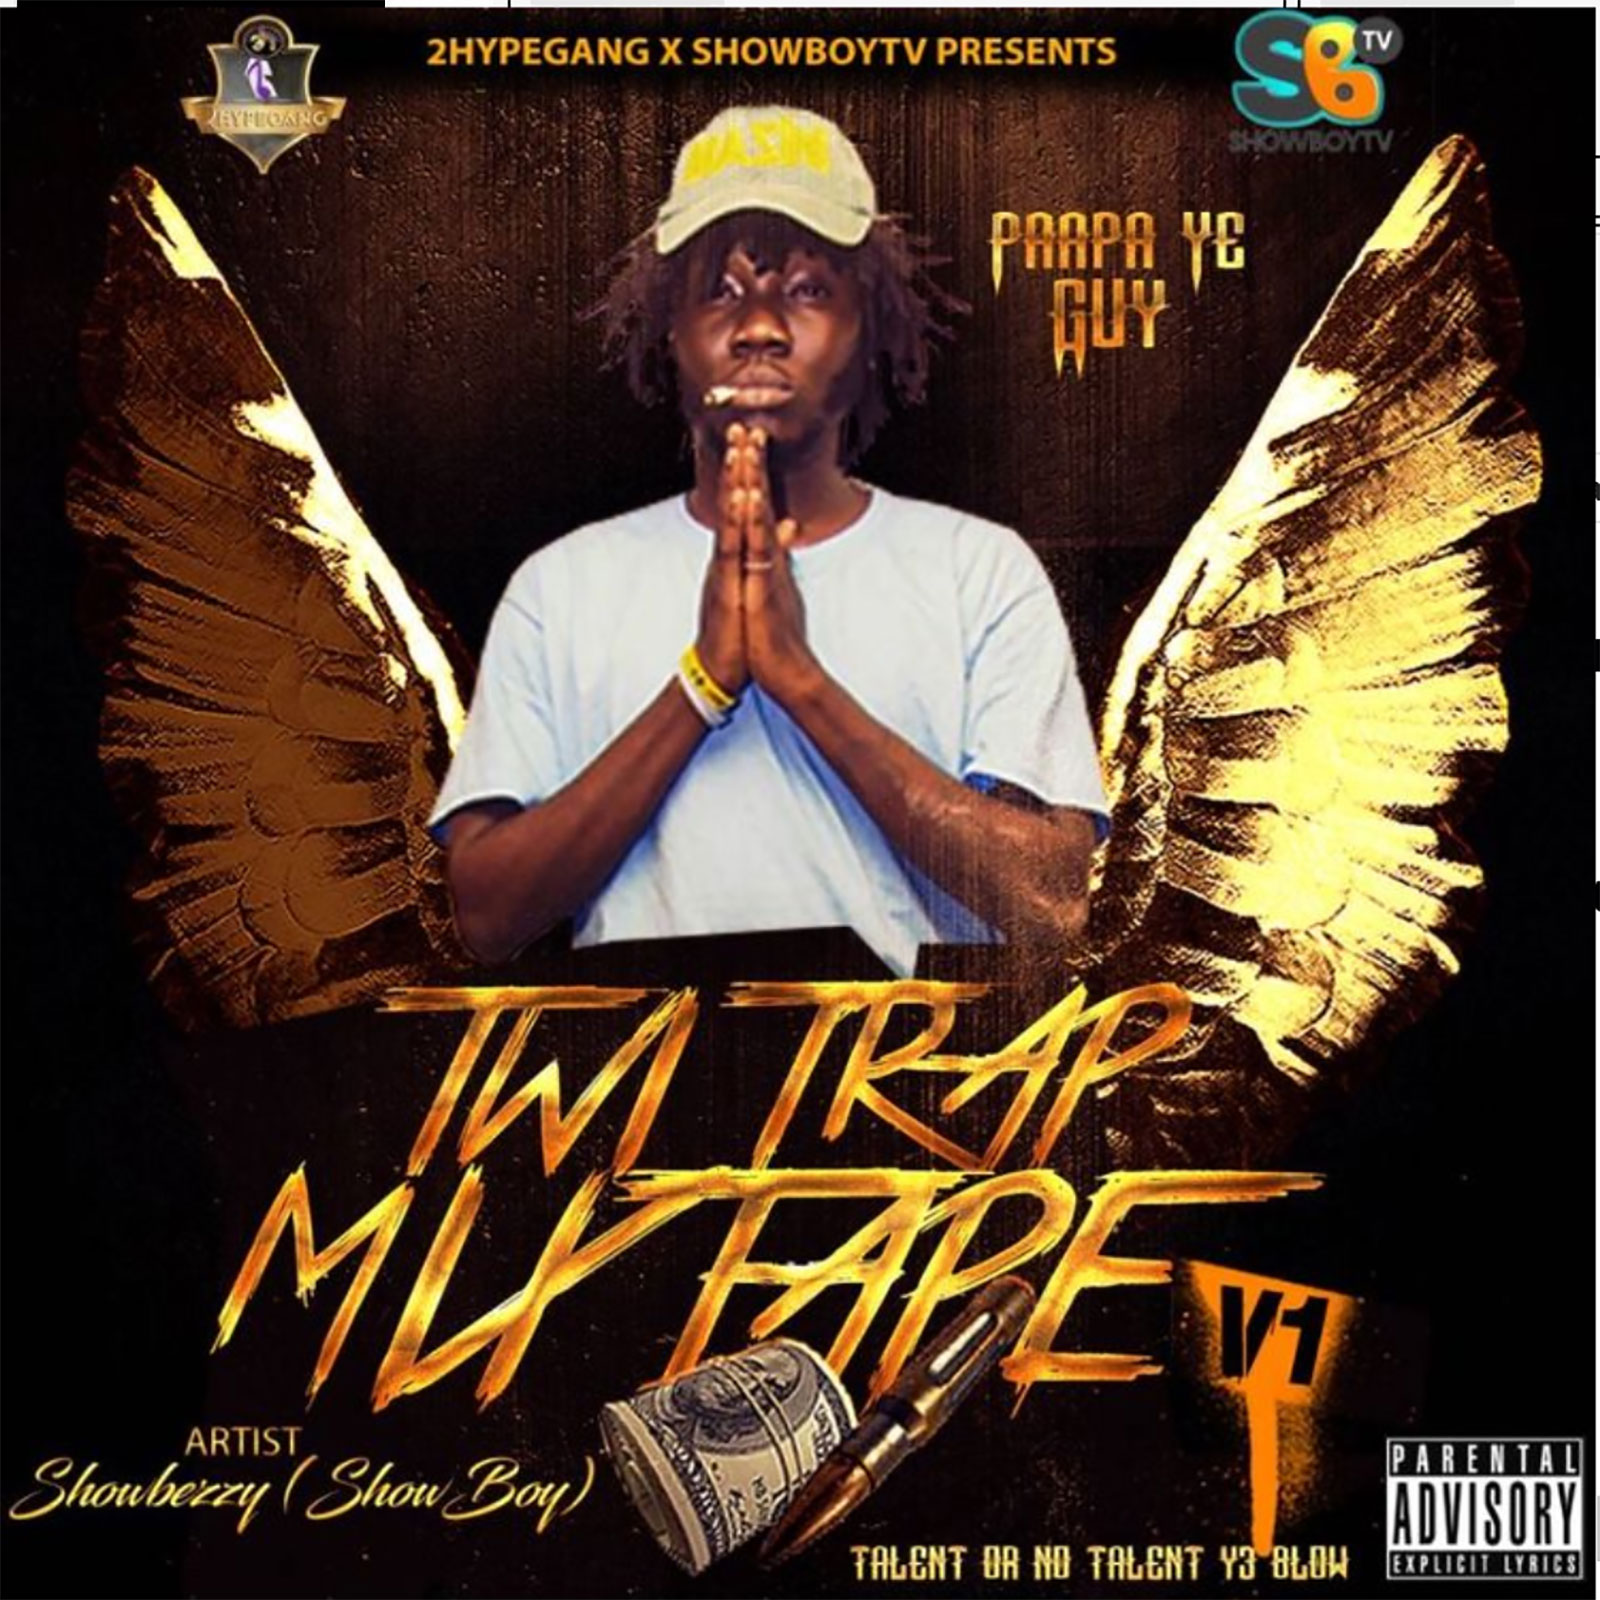 Twi Trap Mixtape Vol. 1 by Showboy (Paapa Ye Guy)